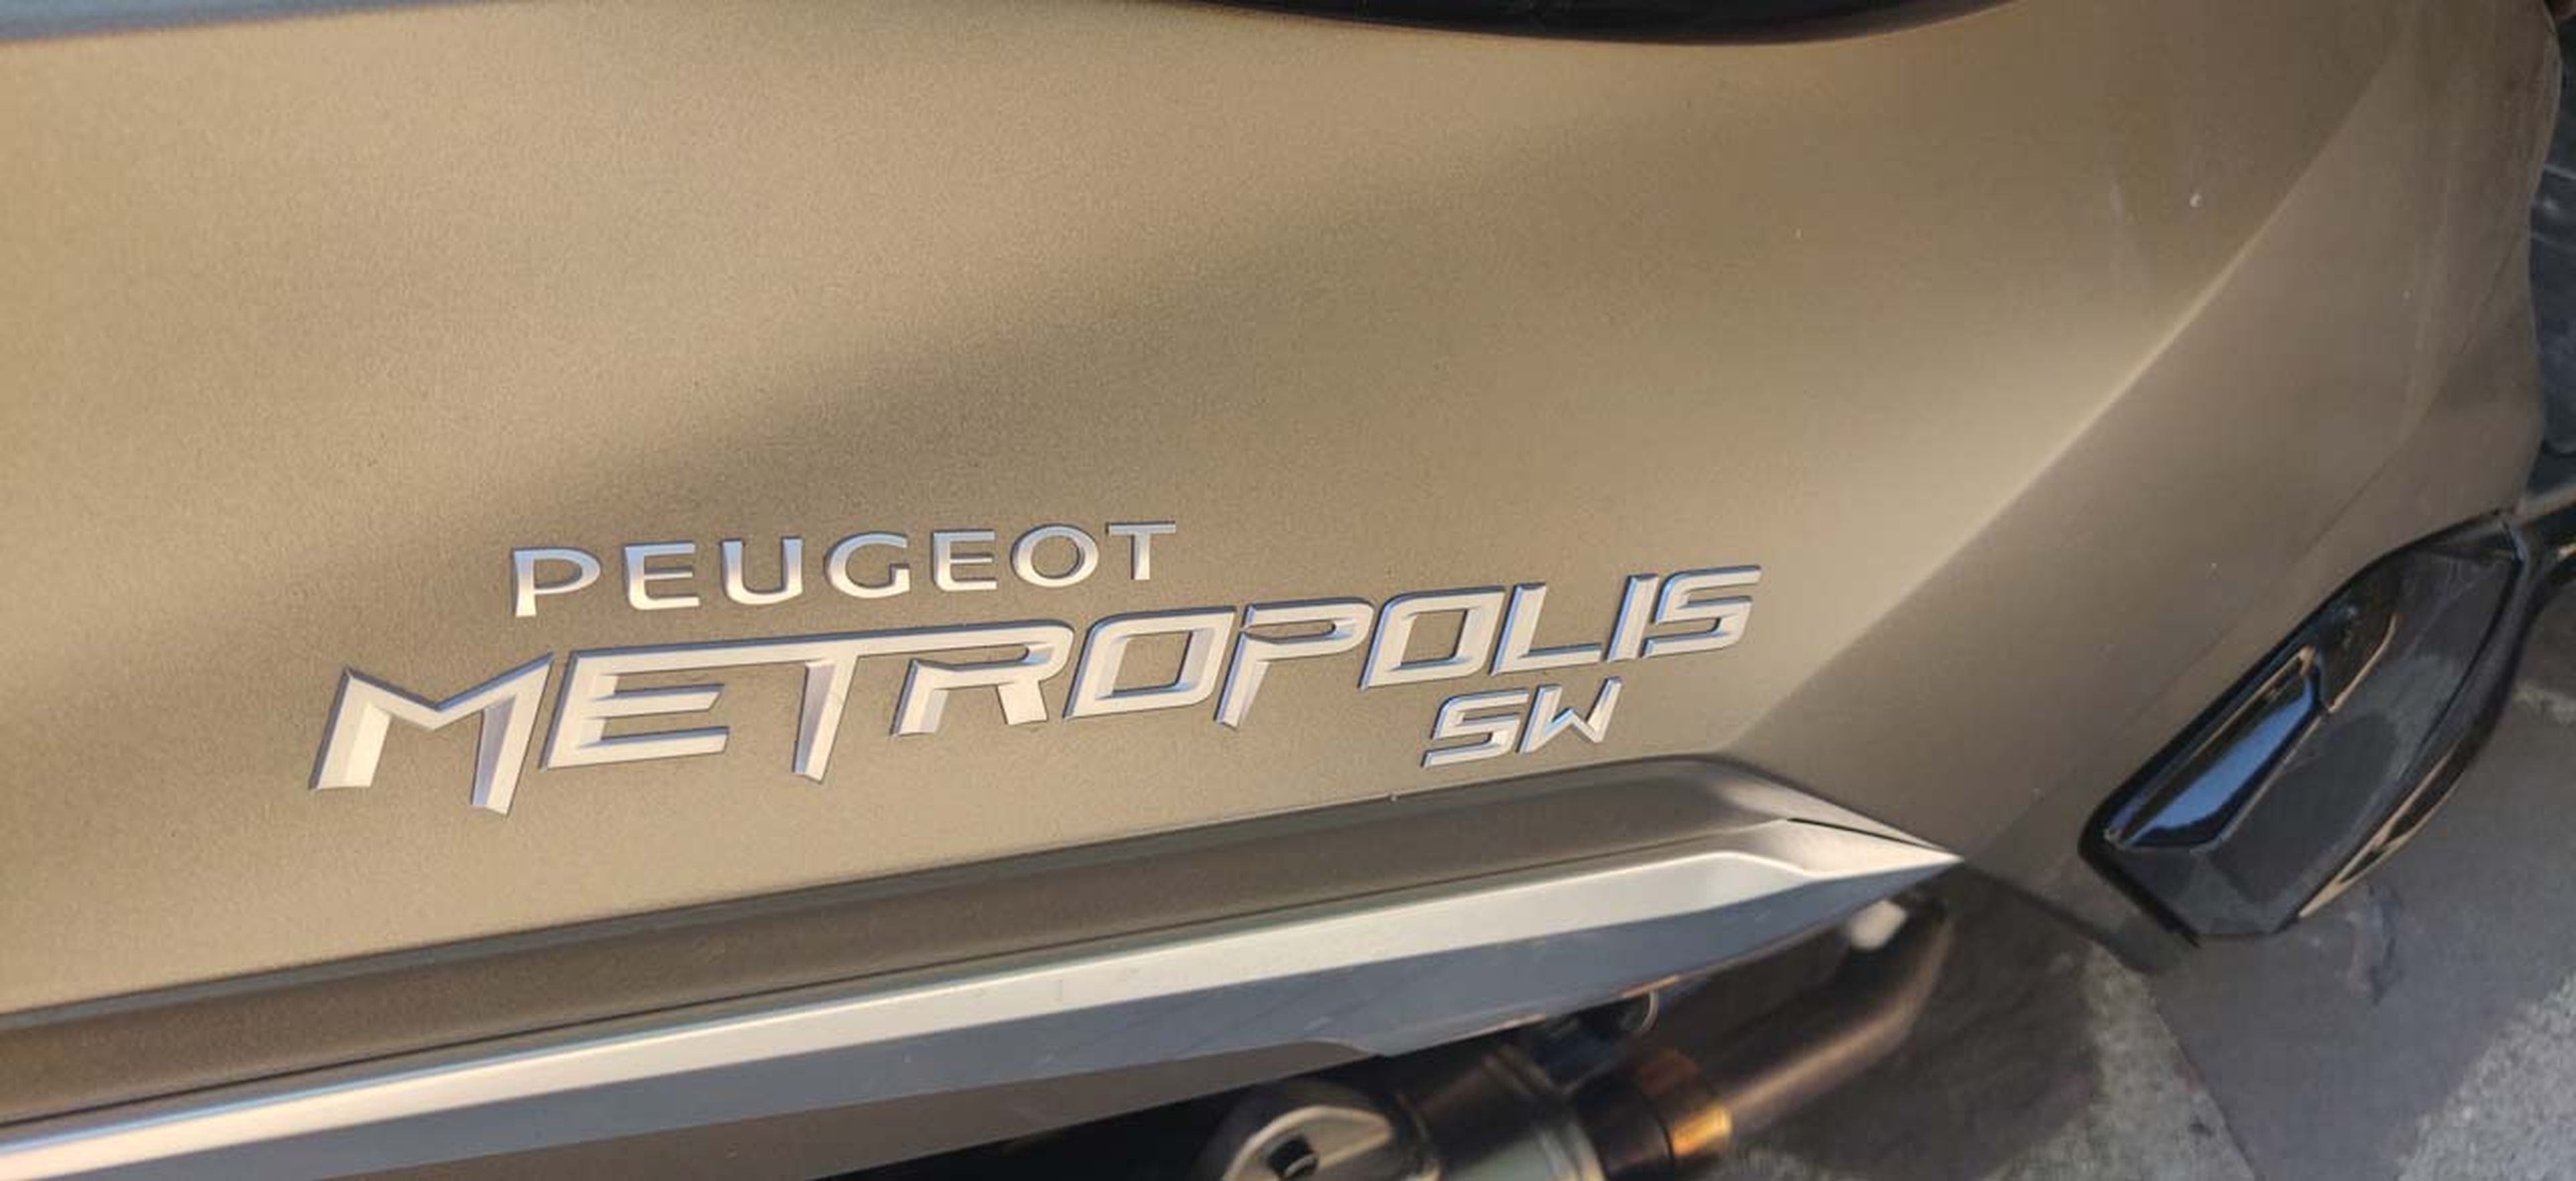 Prueba Peugeot Metropolis SW, 400 cc y mucho maletero